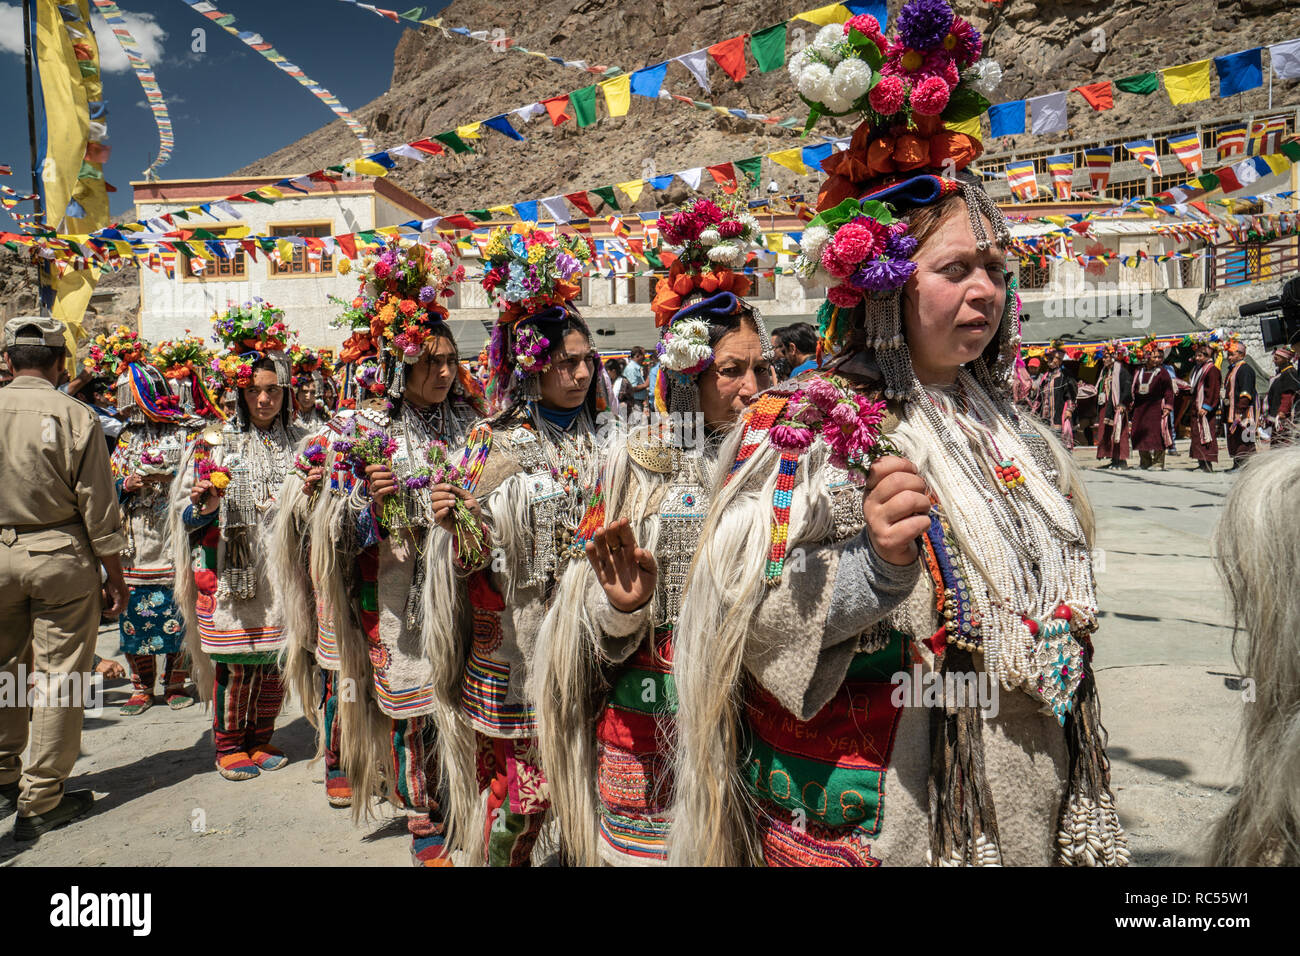 Le Ladakh, Inde - le 29 août 2018 : Les femmes artistes-interprètes en costumes traditionnels de la danse au Ladakh, Inde. Rédaction d'illustration. Banque D'Images